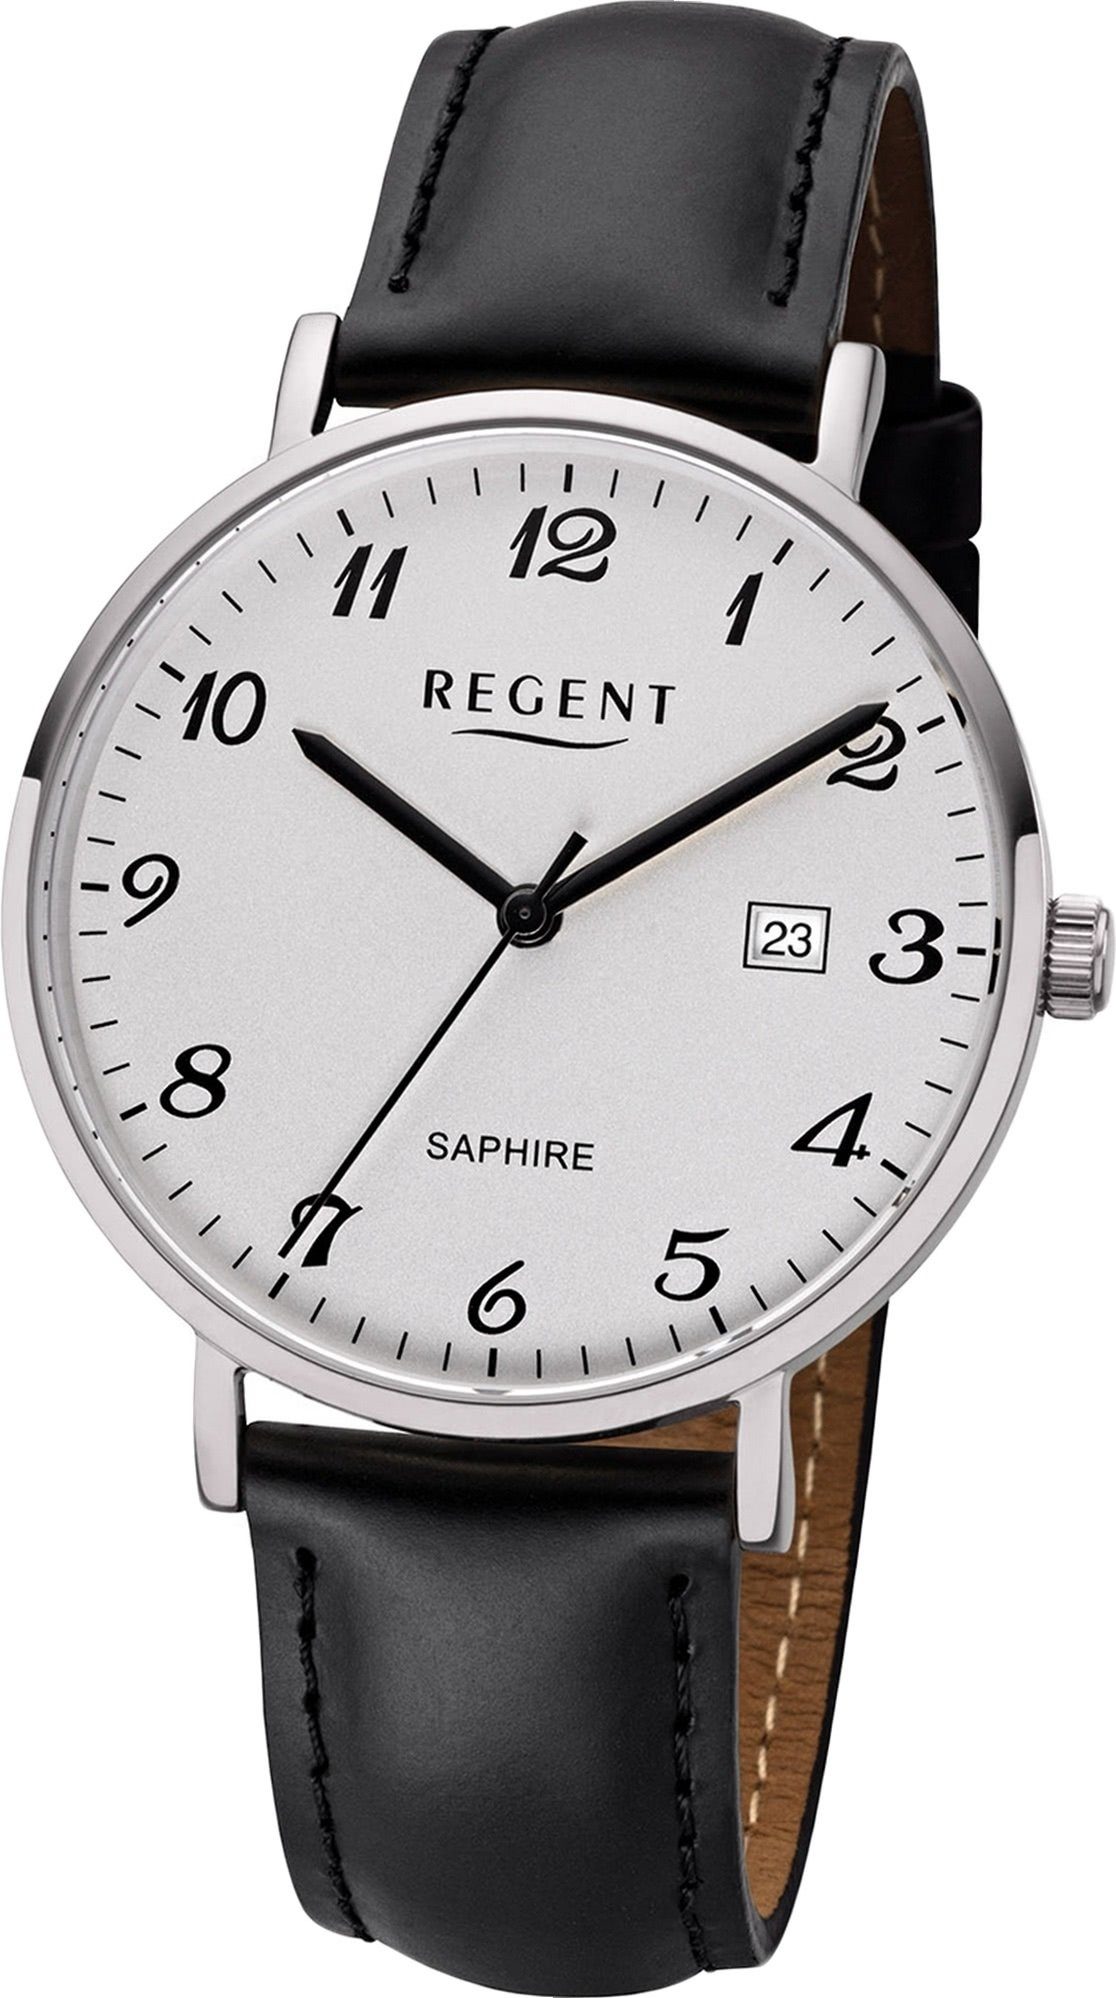 Regent Quarzuhr Regent Leder Herren Uhr F-1229 Analog, Herrenuhr Lederarmband schwarz, rundes Gehäuse, mittel (ca. 38mm)